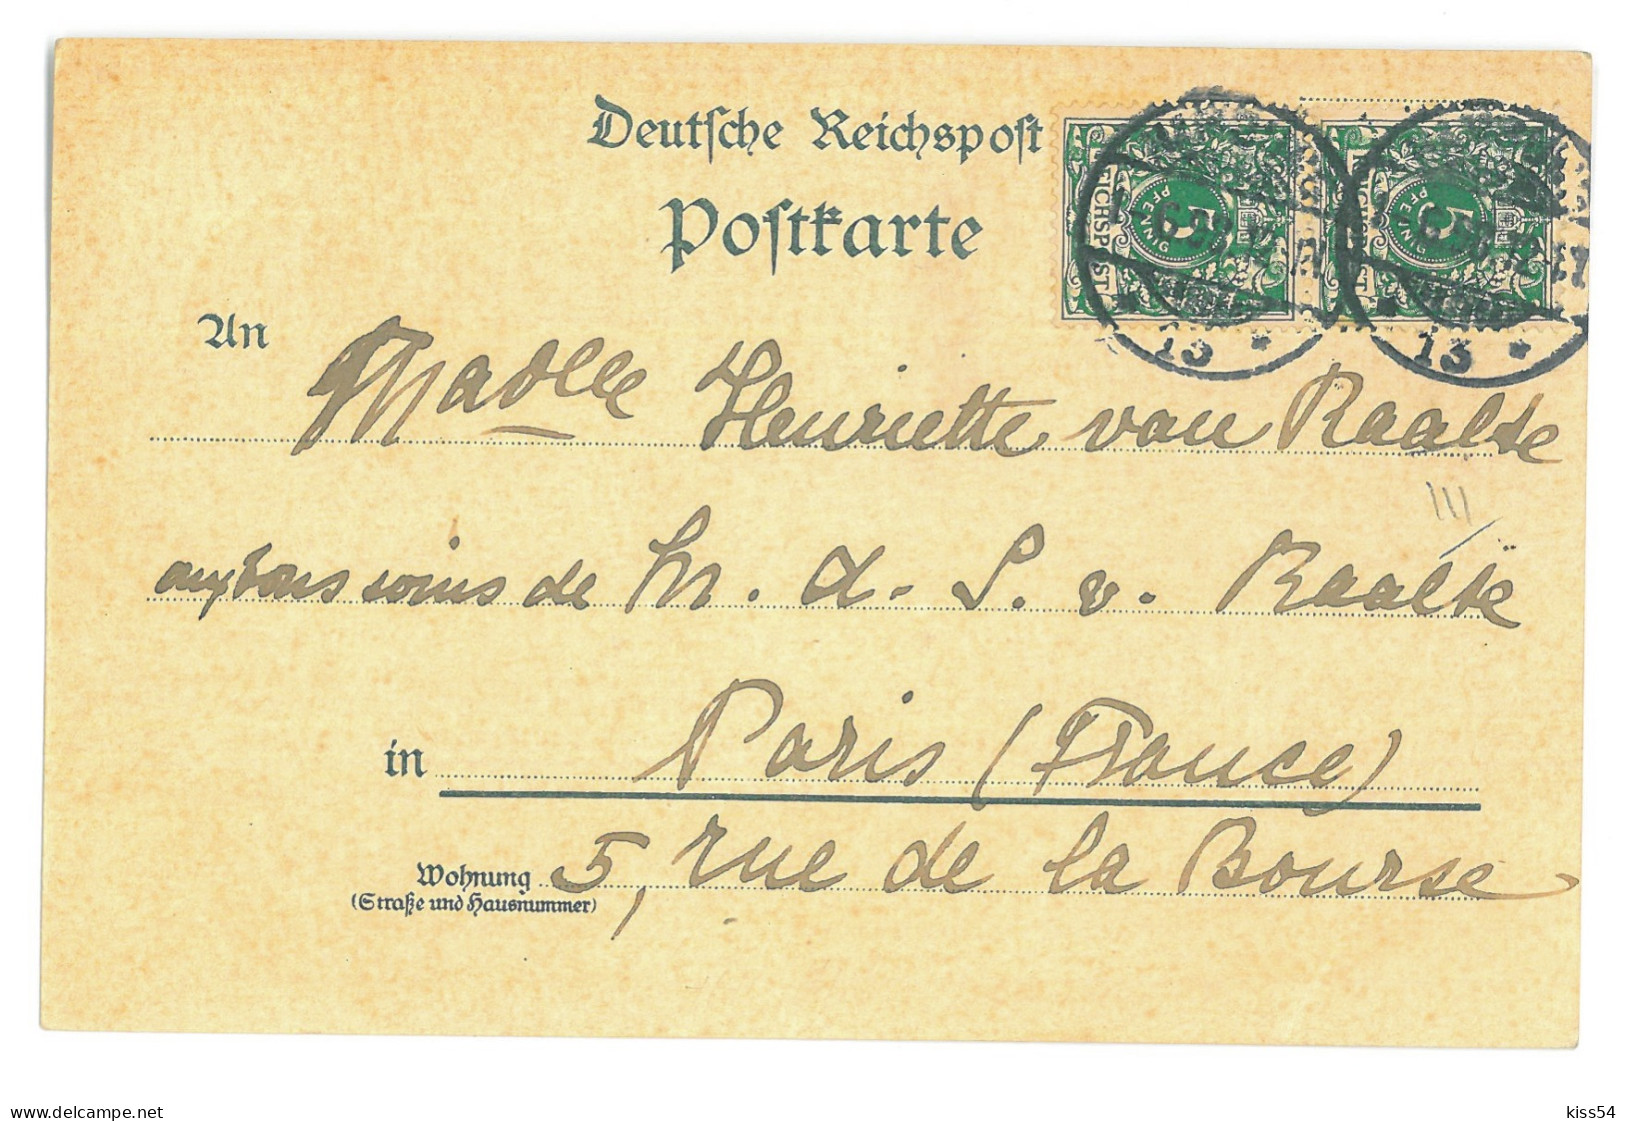 GER 32 - 16929 HAMBURG, Litho, Germany - Old Postcard - Used - 1898 - Harburg